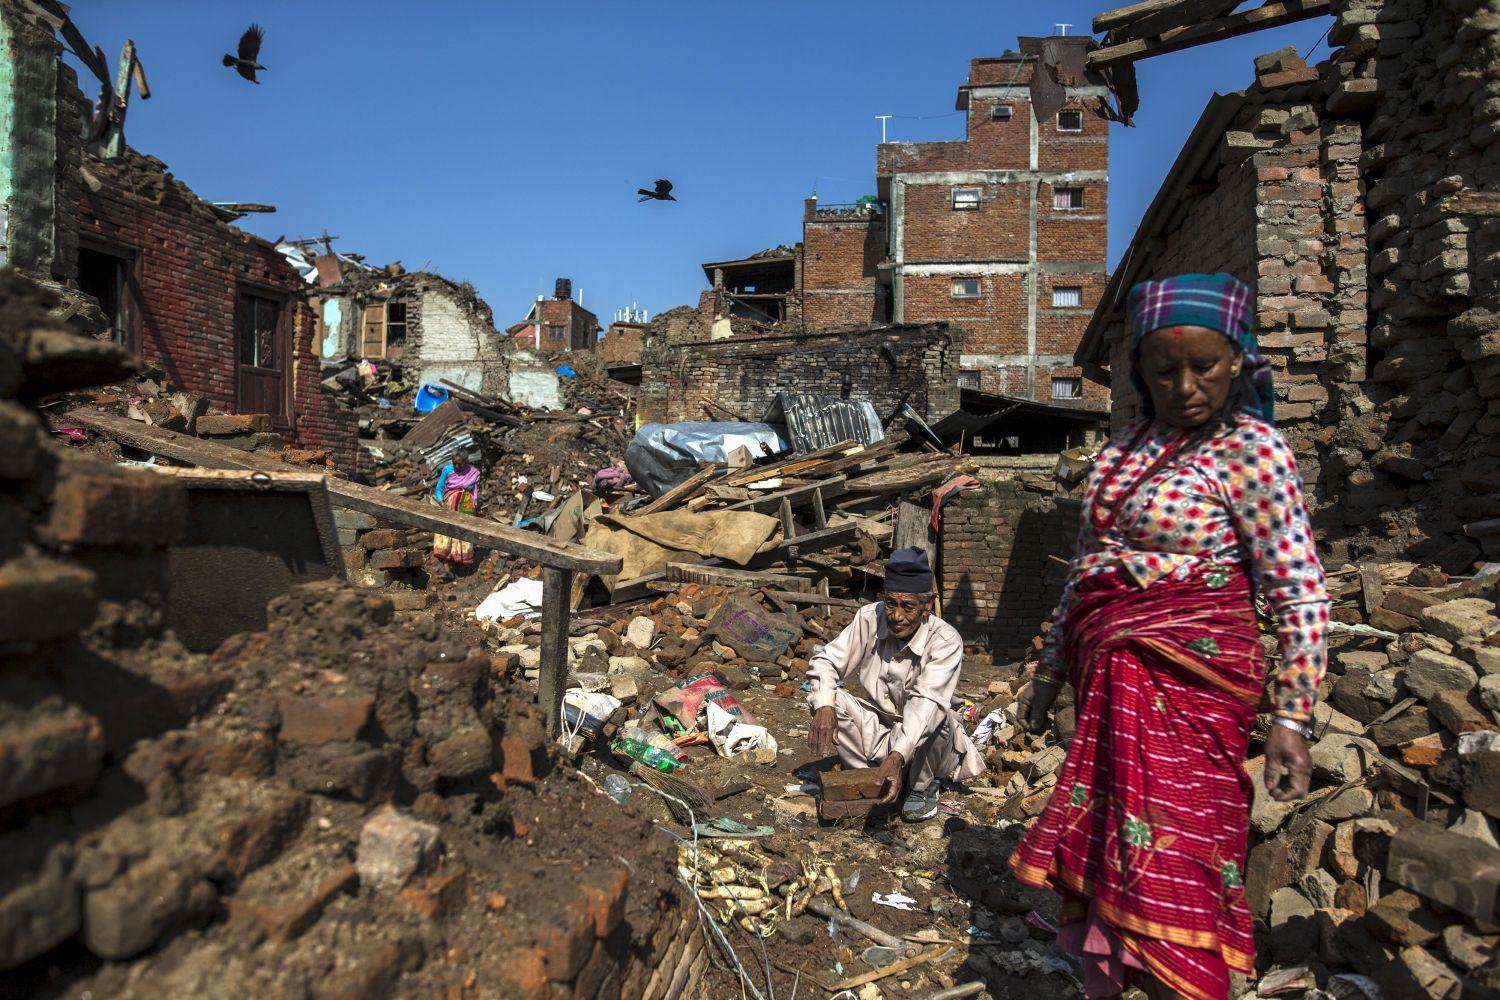 Még az április 25-i földrengés után maradt romokat sem tudták eltakarítani Sankhuban - Nepál külvárosában -, amikor jött a következő katasztrófa